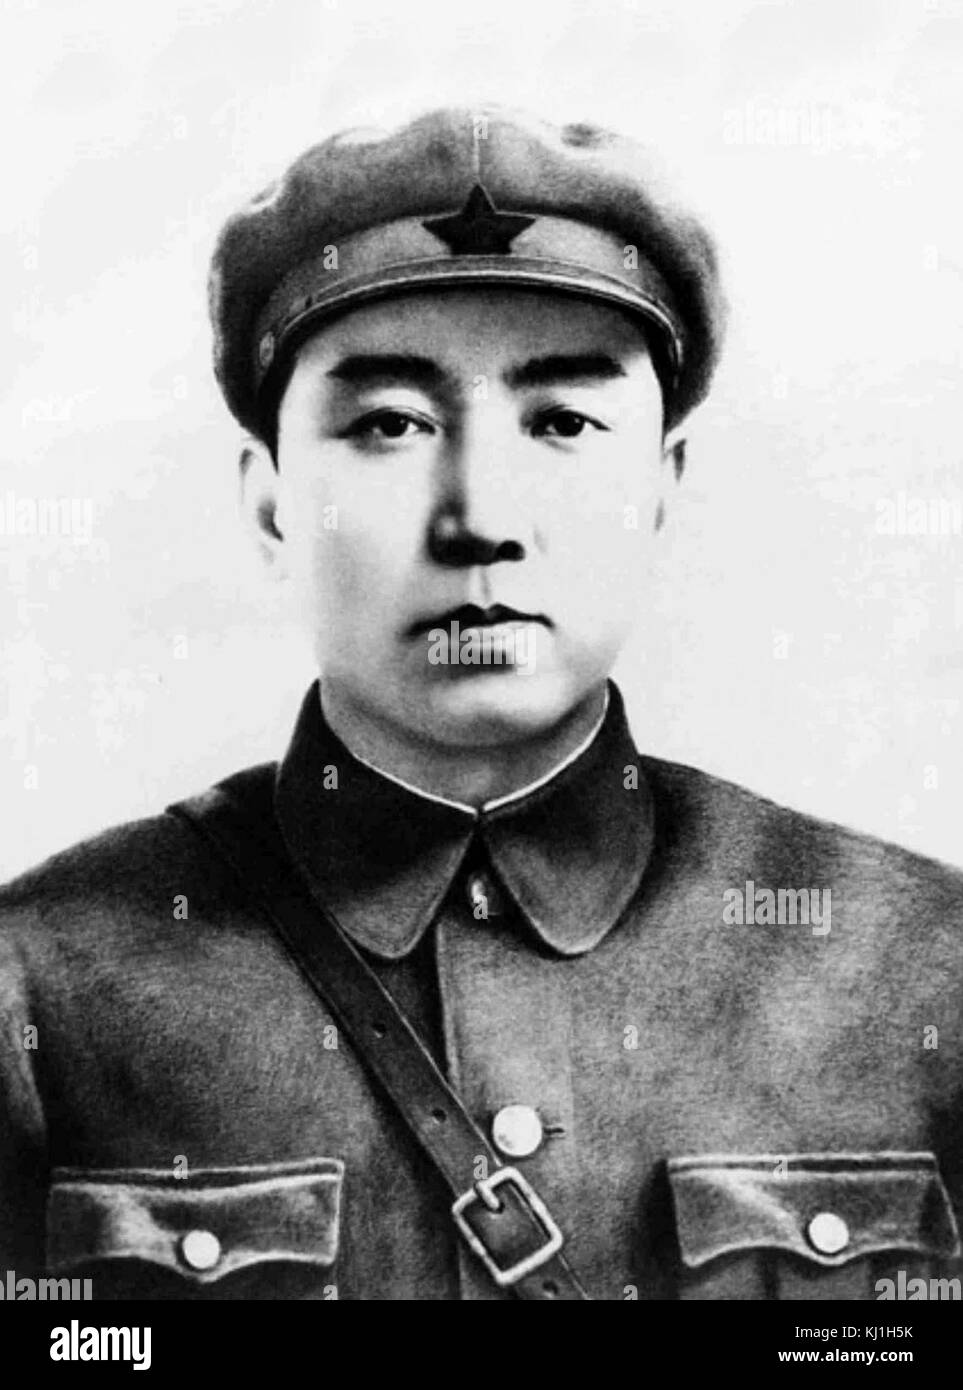 Kim Il Sung (1912 - 1994), fue el líder supremo de la República Popular Democrática de Corea, comúnmente conocida como Corea del Norte, durante 46 años, desde su creación en 1948 hasta su muerte en 1994 Foto de stock